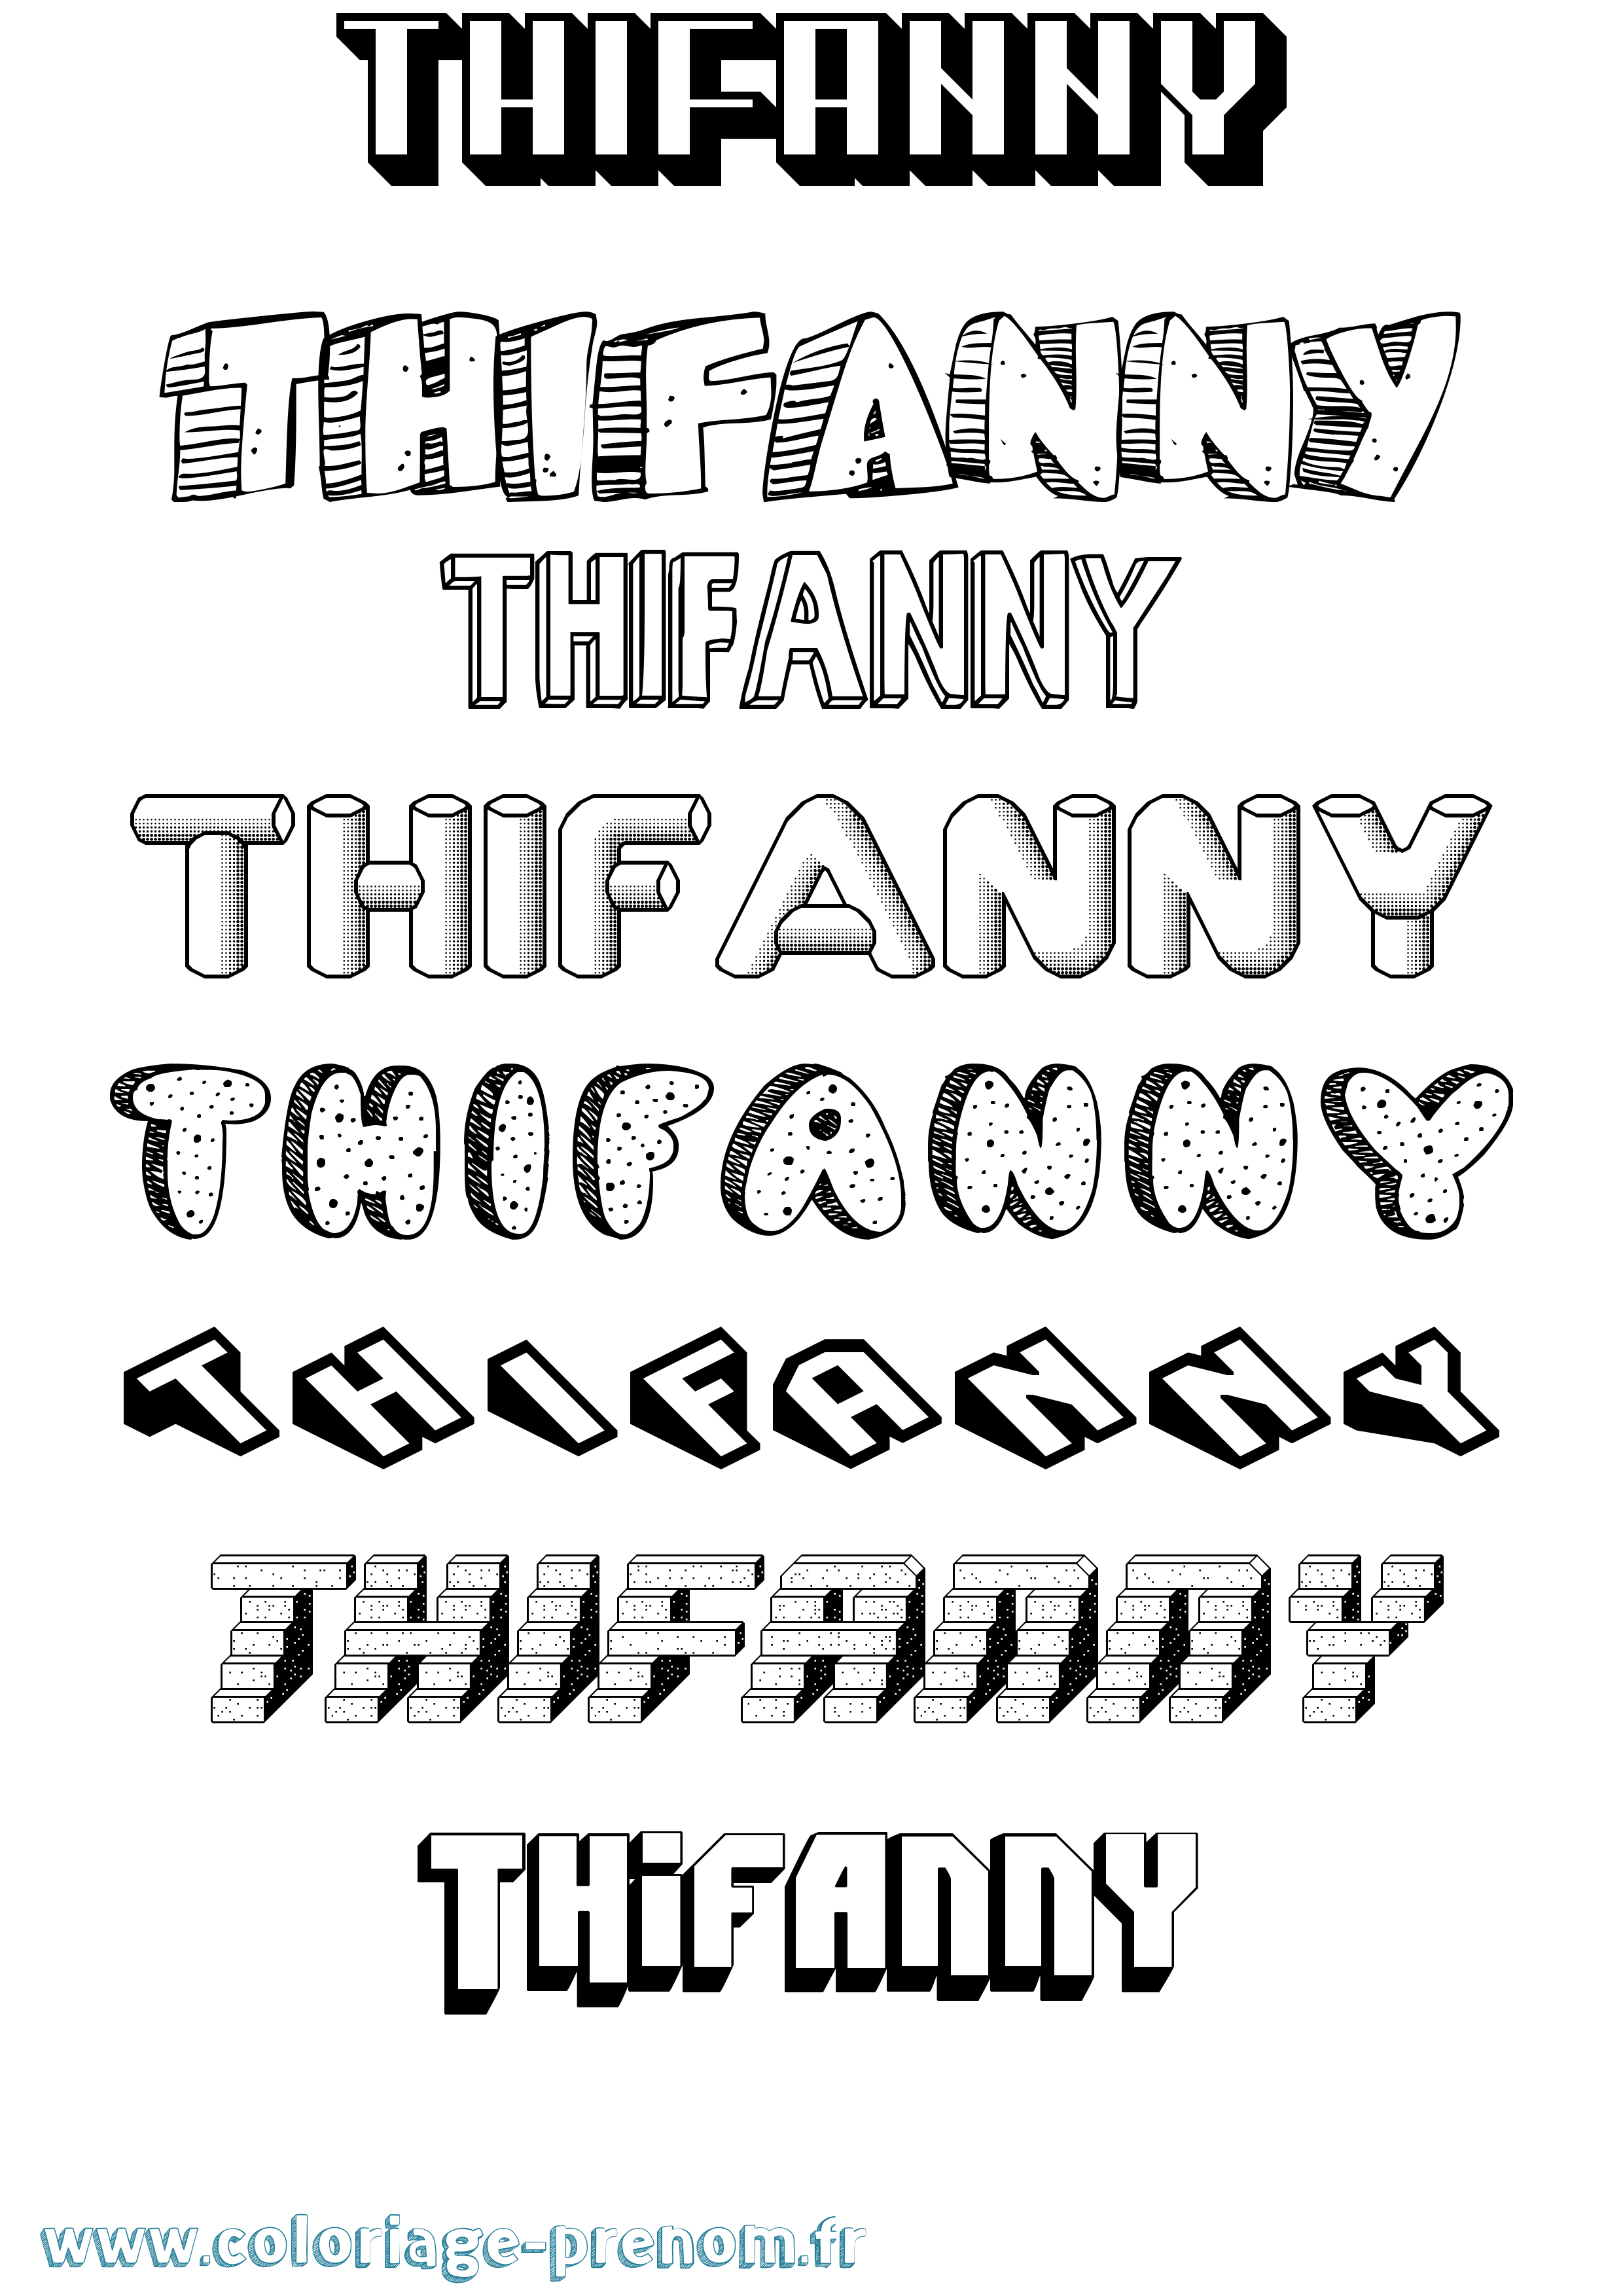 Coloriage prénom Thifanny Effet 3D